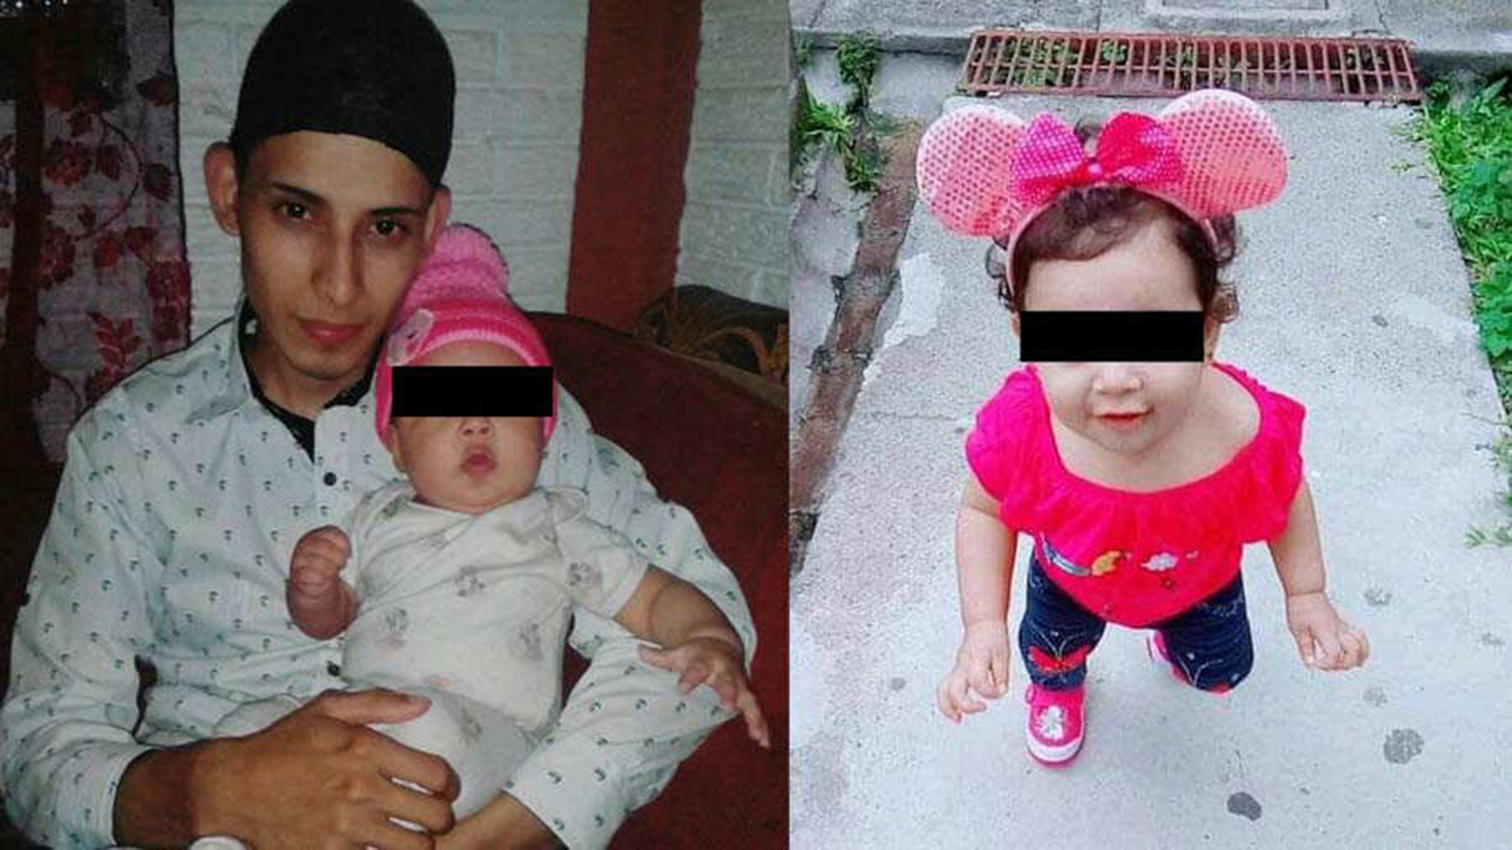 La foto del salvadoreño y su hija muertos desata críticas